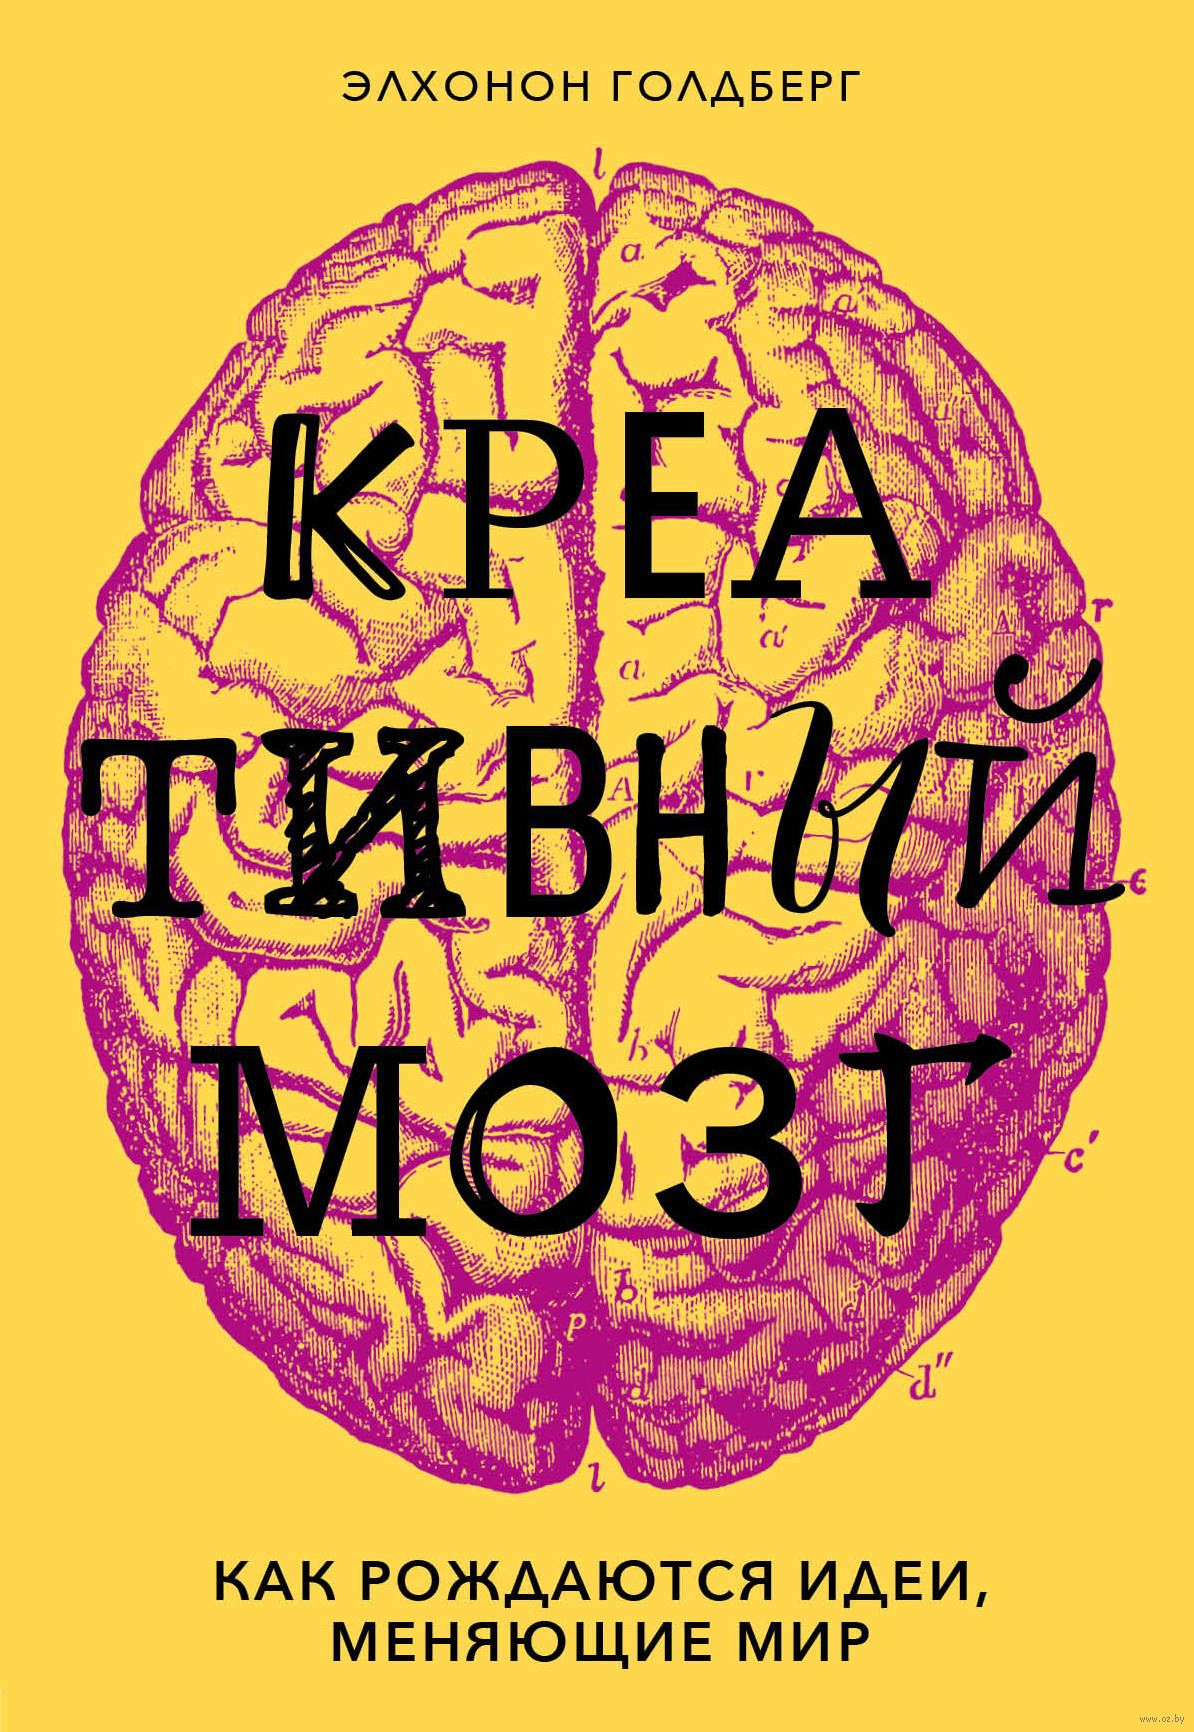 Book brain. Креативный мозг. Креативный мозг книга. Творческий мозг книга. Книга «креативность».